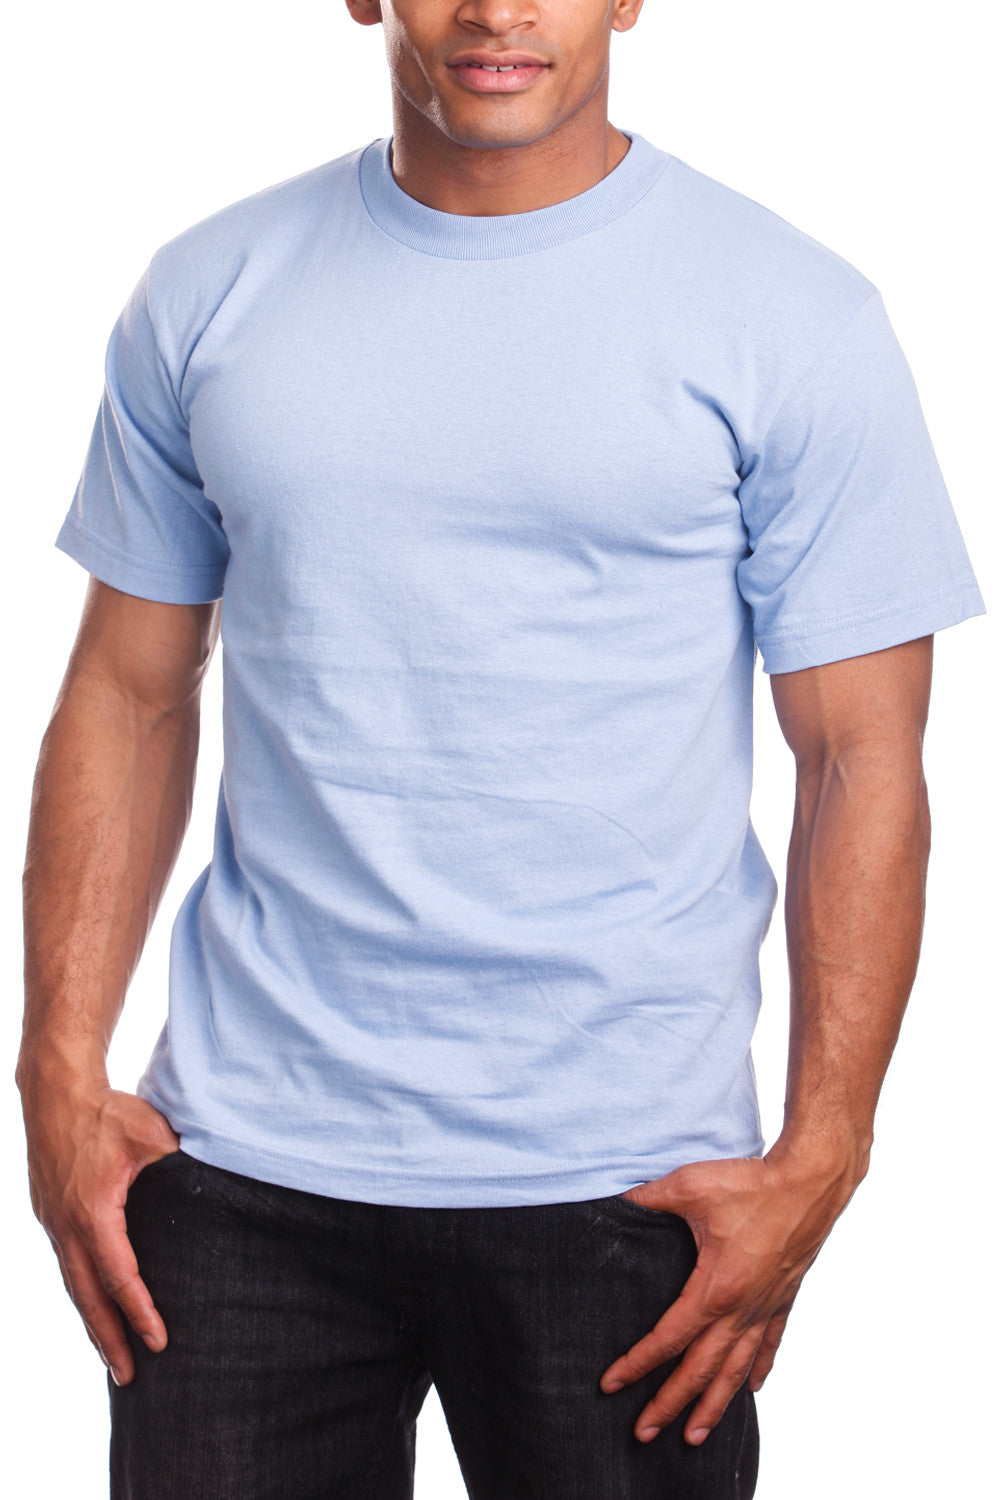 Mens Plain Sky Blue Cotton T Shirt, Size: S-XXL